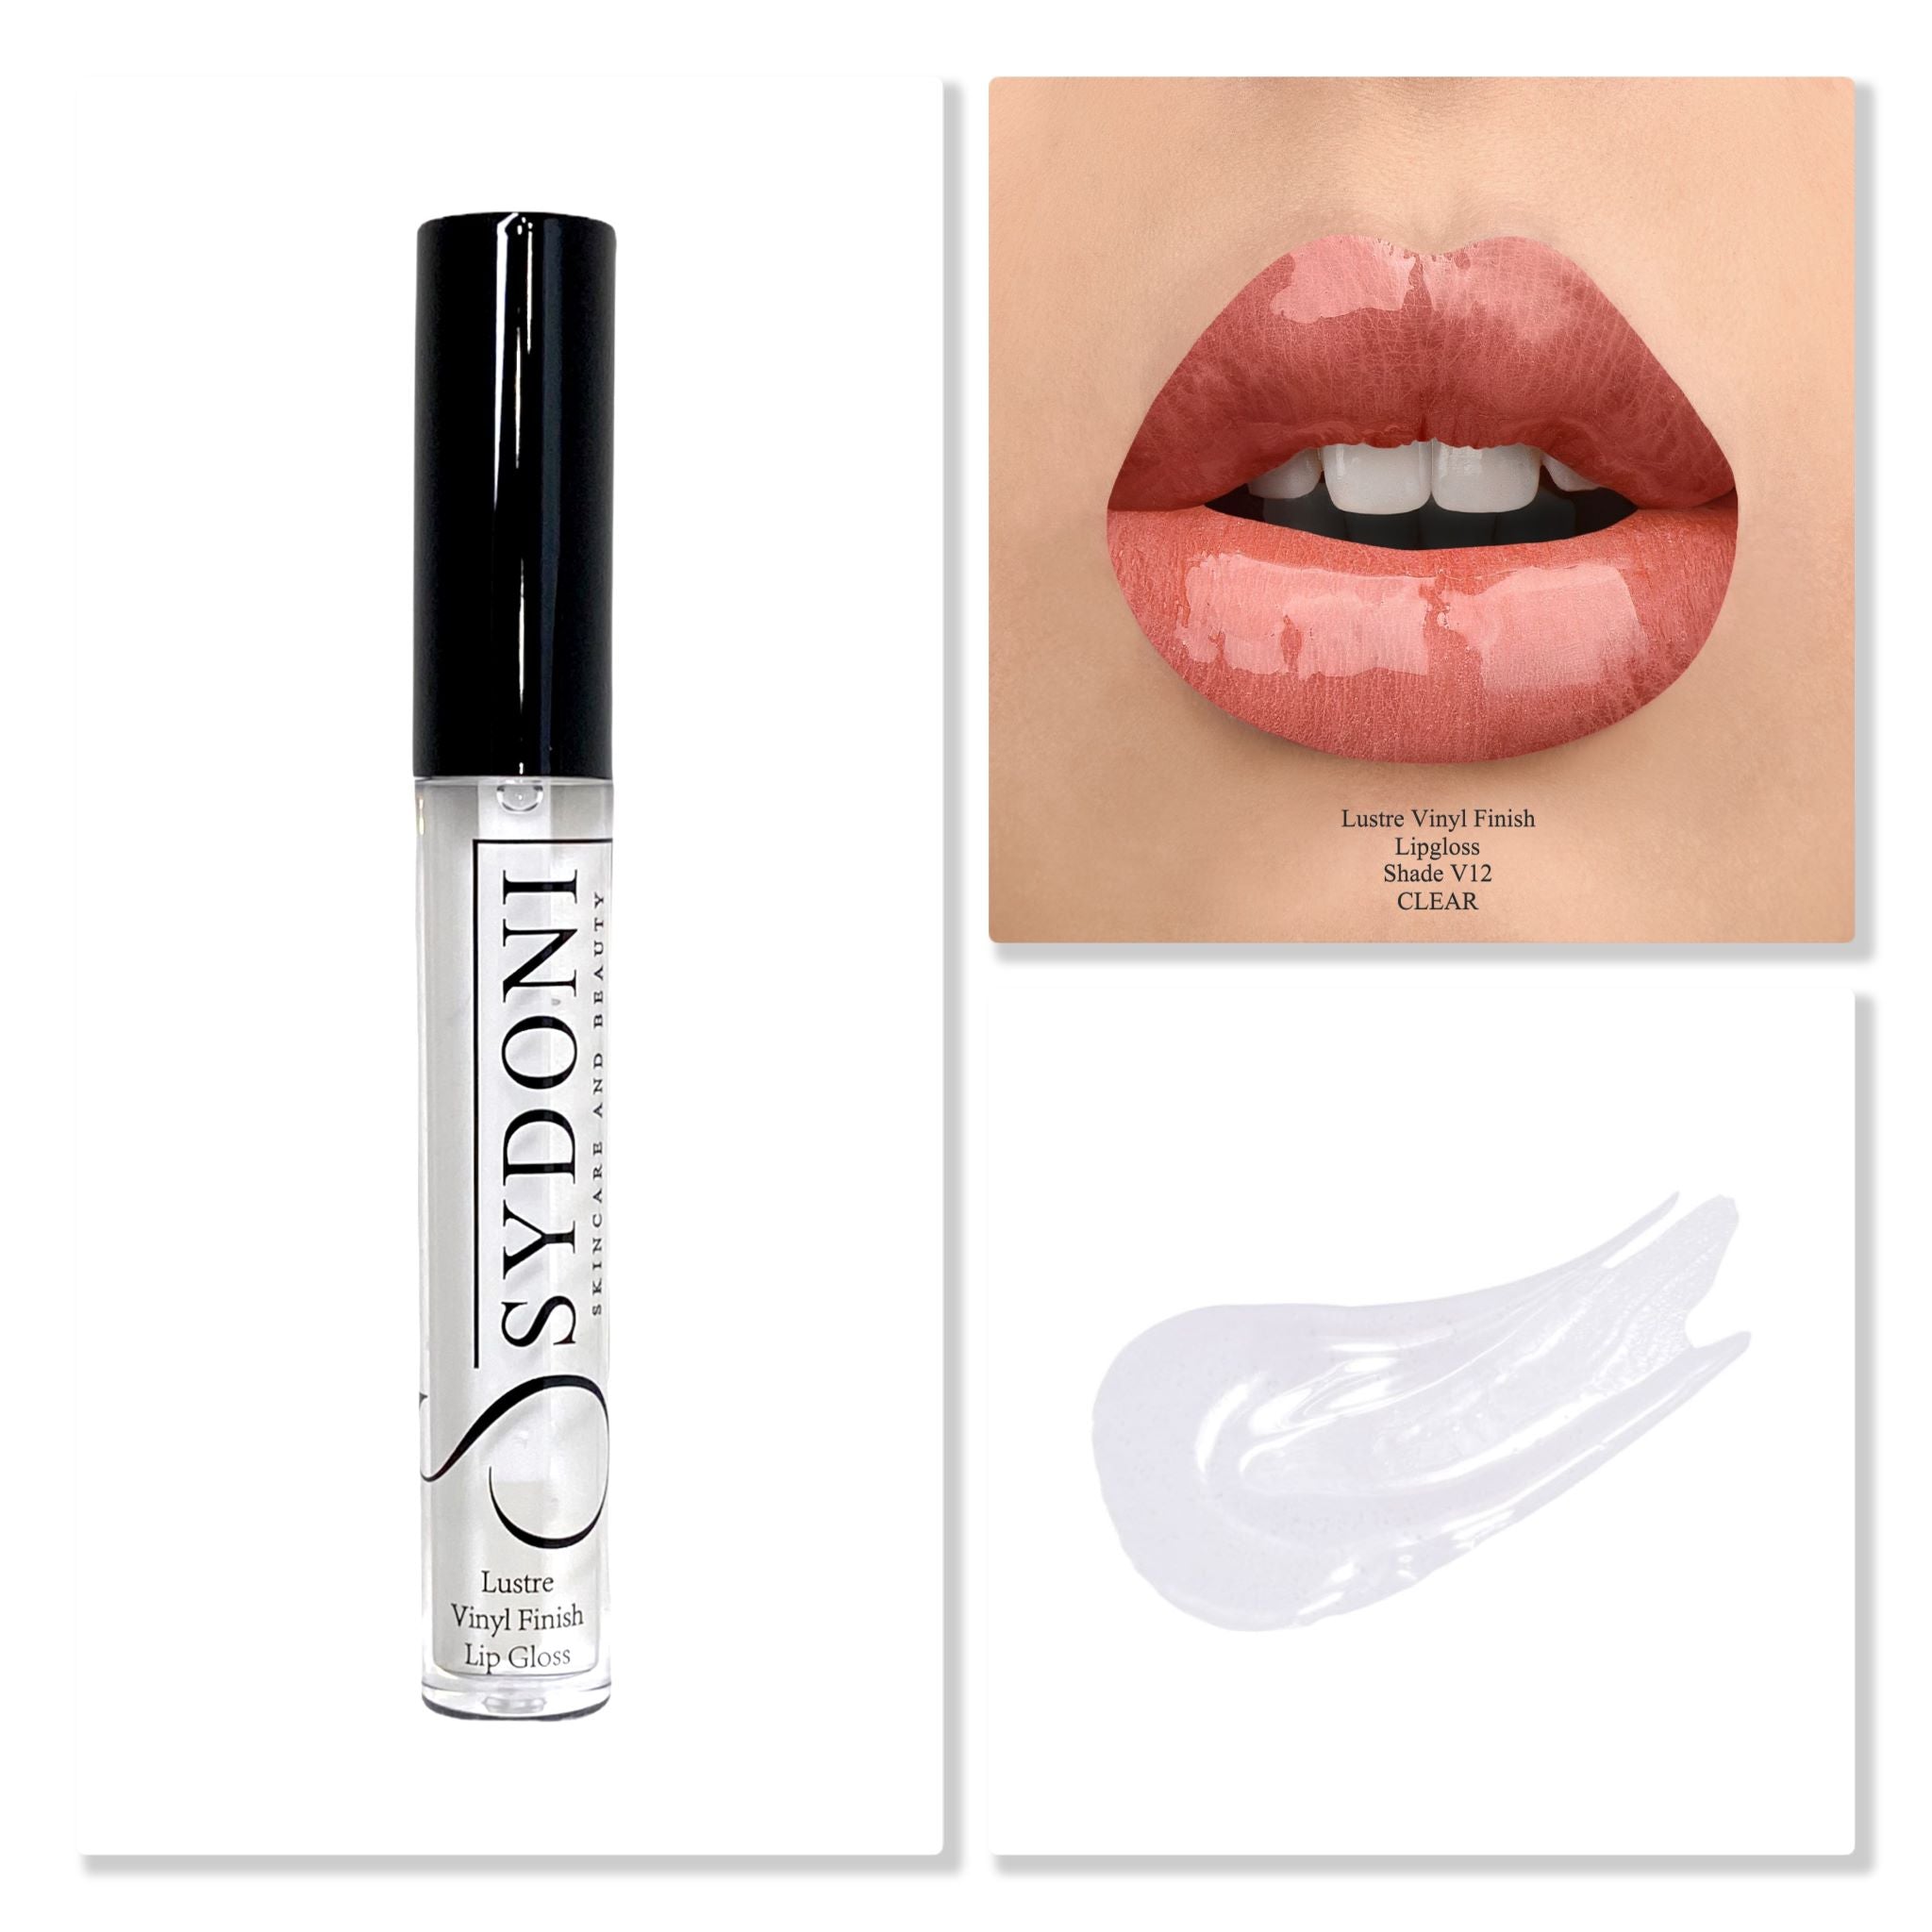 BEST SELLING! V12 Lustre Vinyl Lip Gloss Appears clear on lips